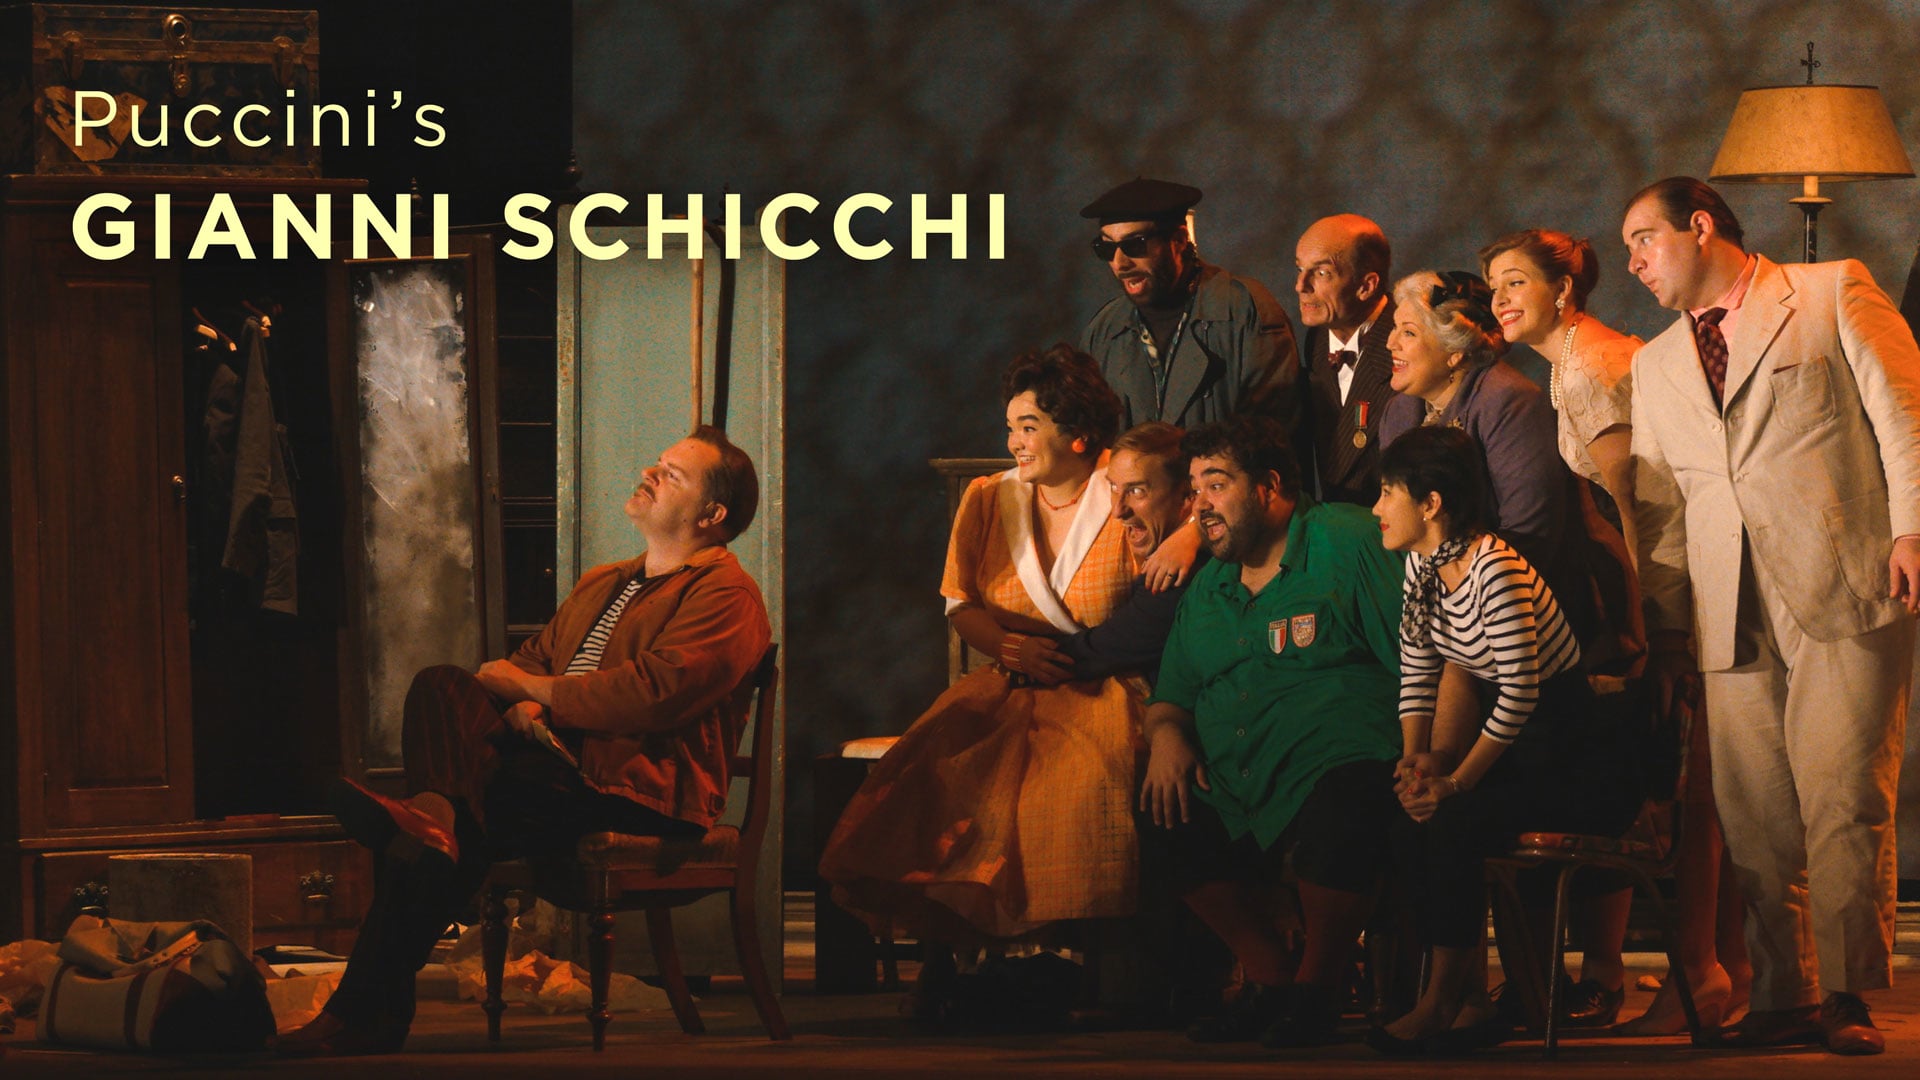 Puccini's Gianni Schicchi